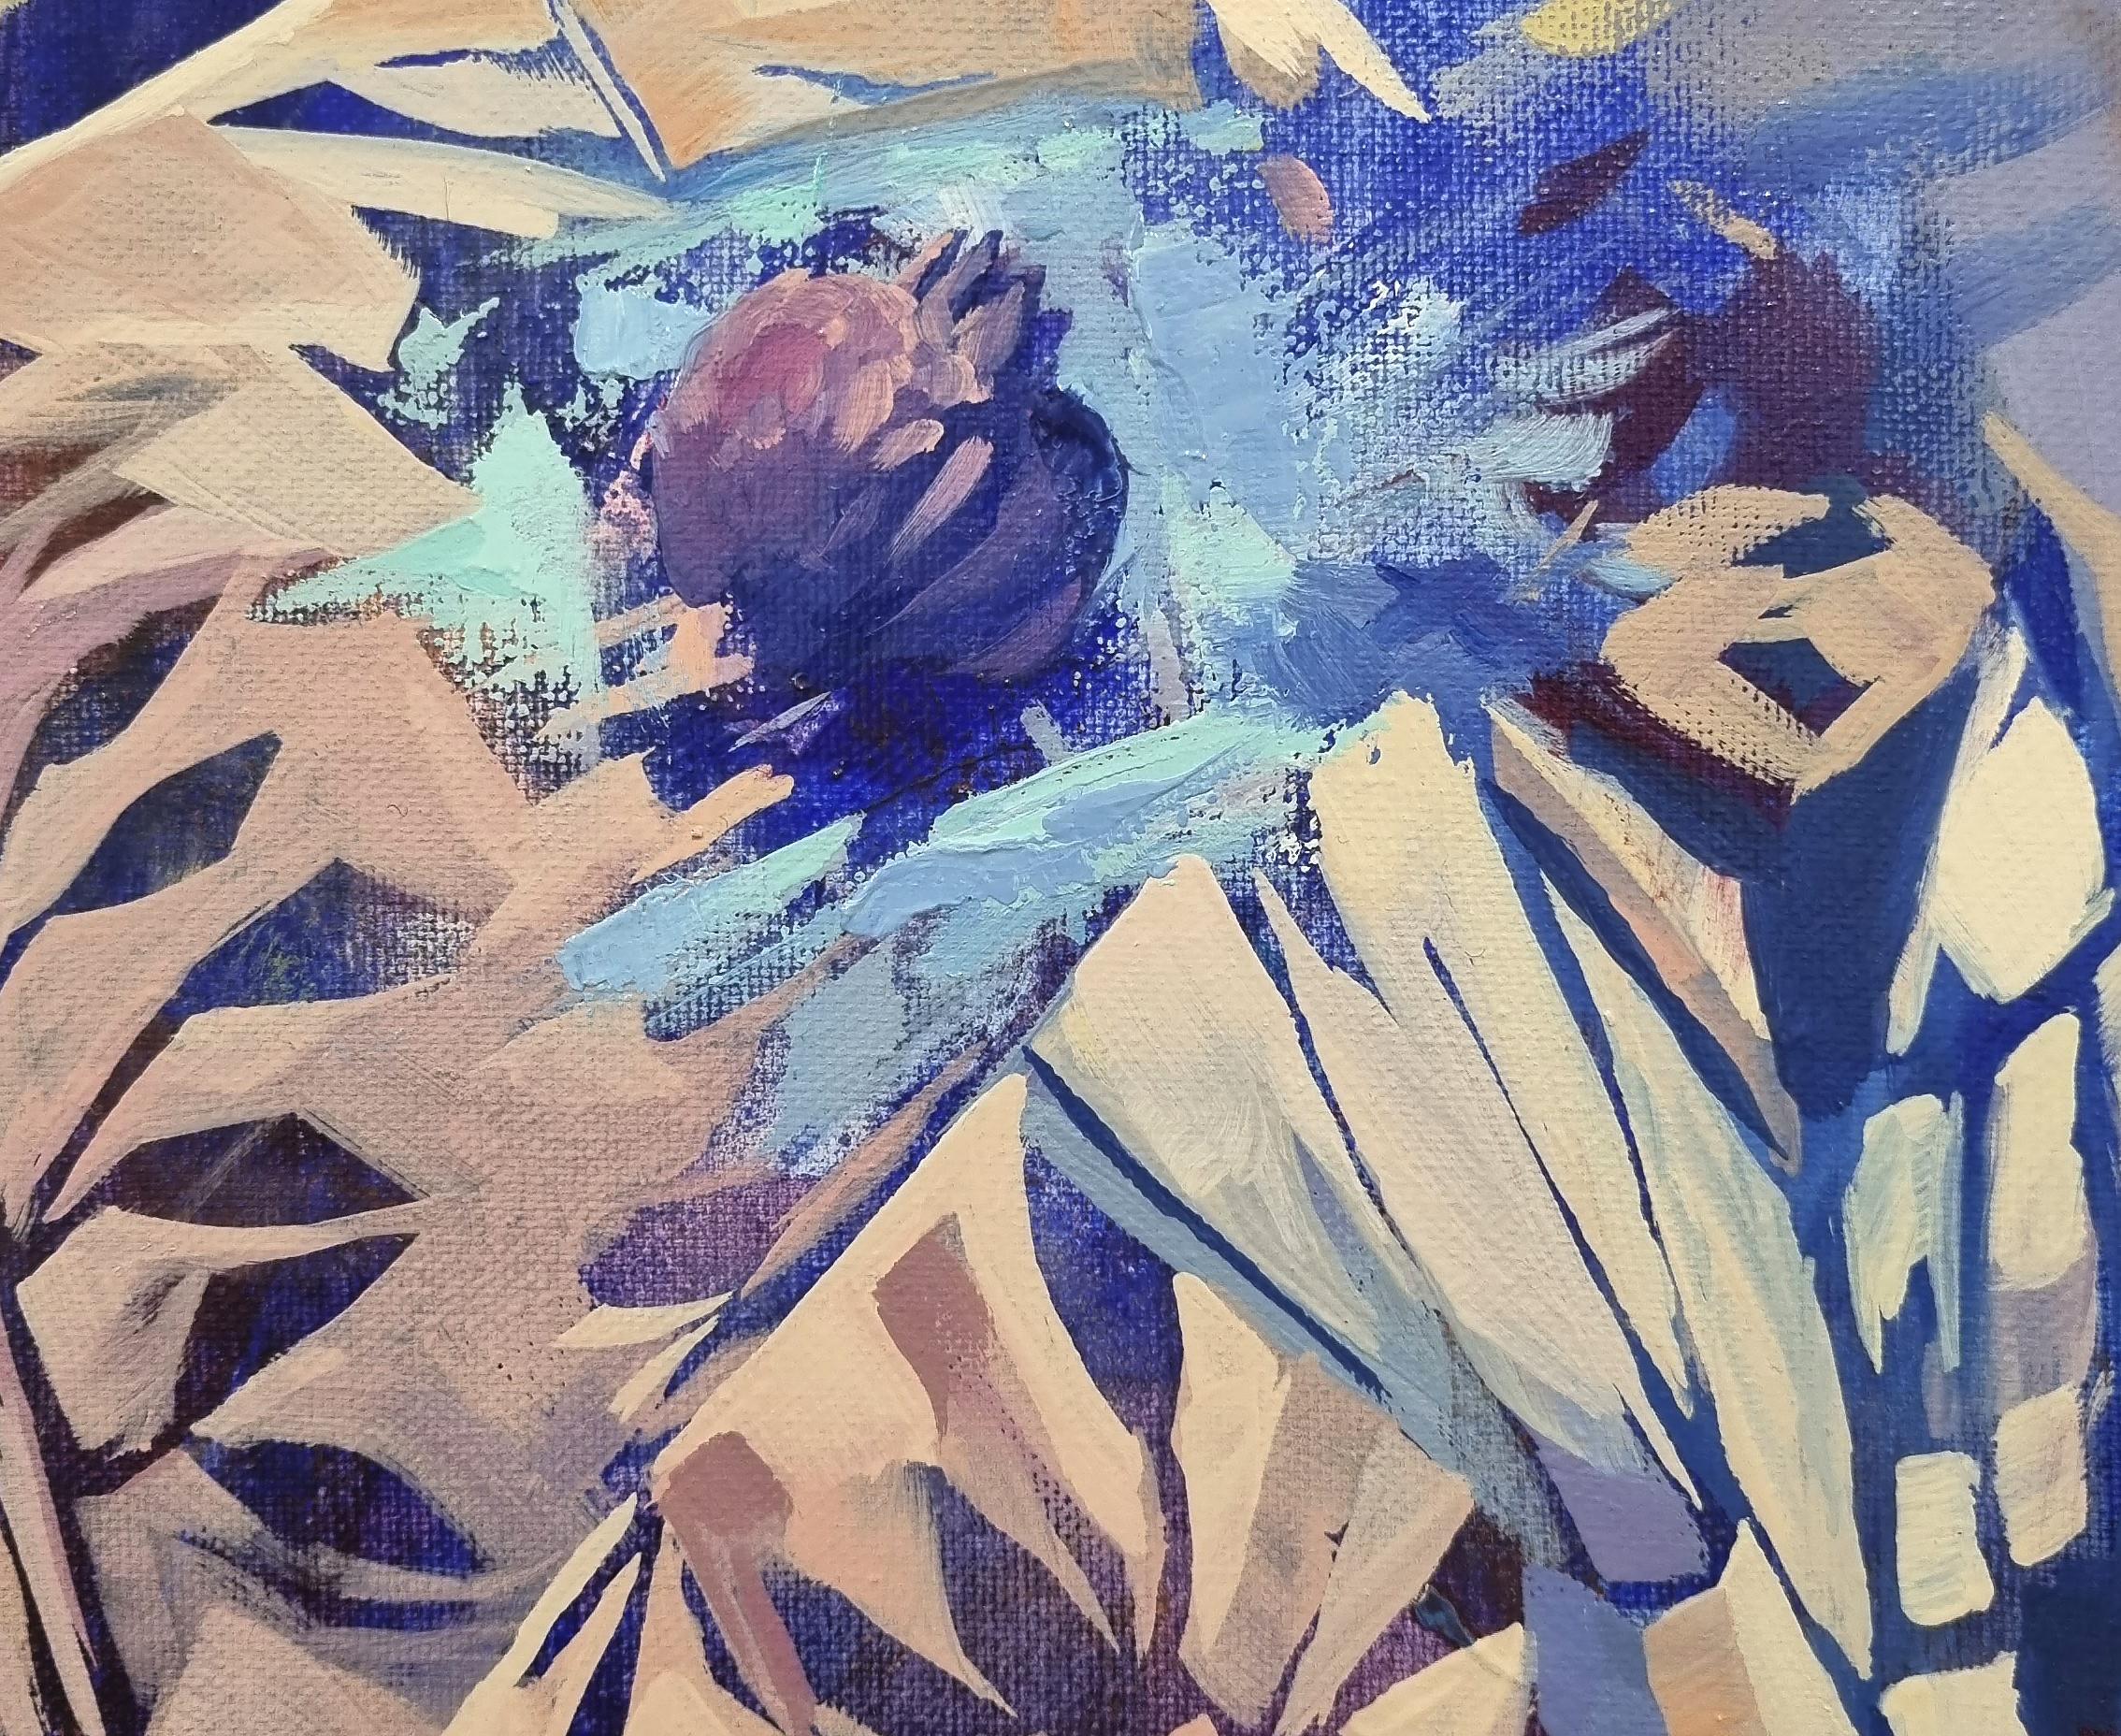 Eve - abstraktes Ölgemälde in Weiß, Grün, Blau, Gelb und Braun (Impressionismus), Painting, von Natalia Yampolskaya